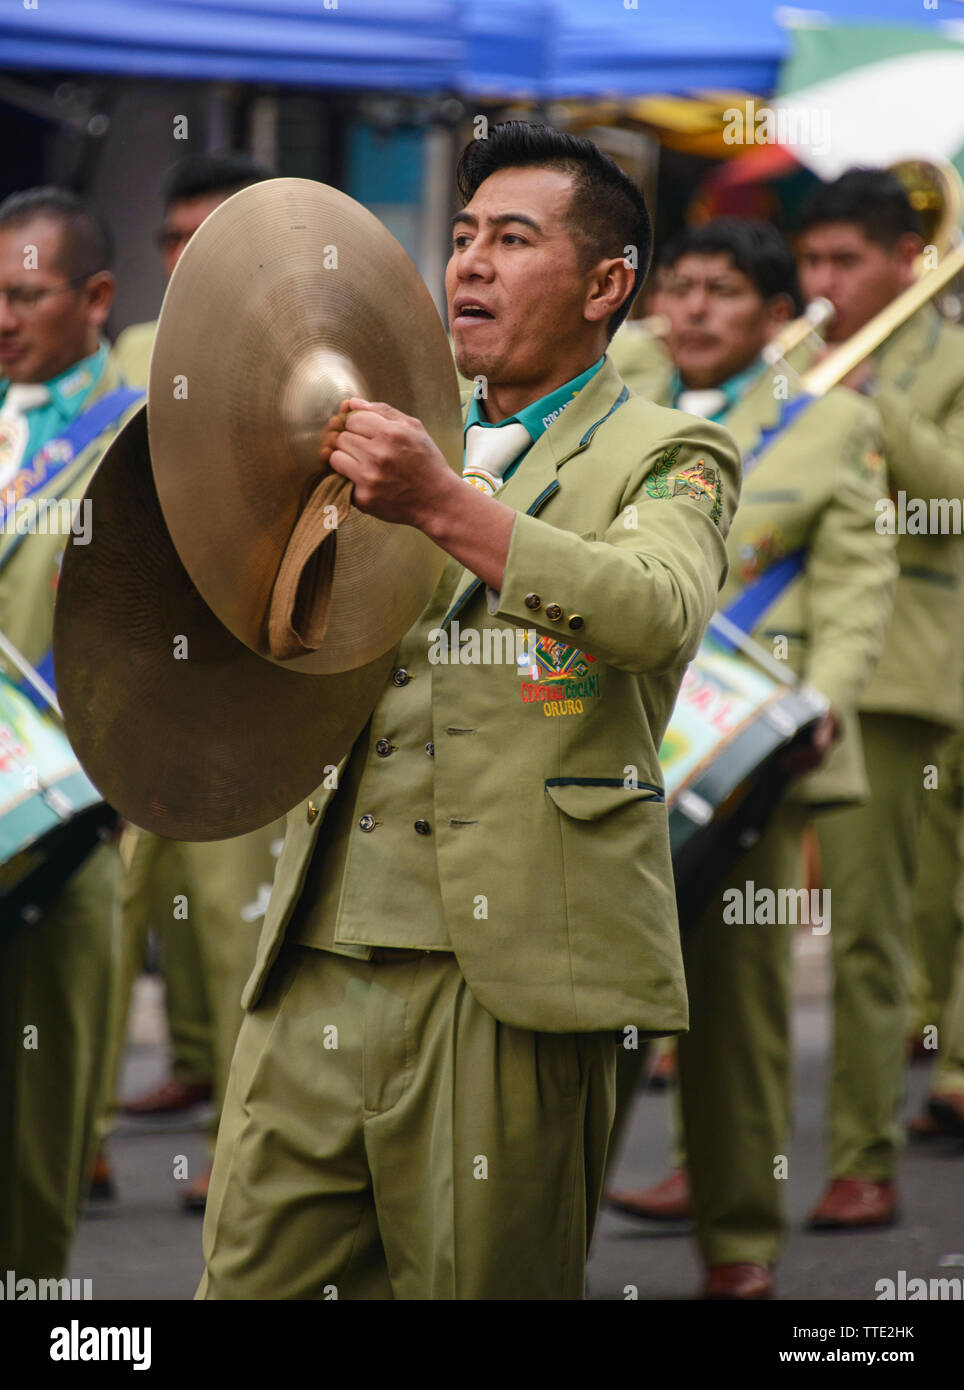 Marching band member at the Gran Poder Festival, La Paz, Bolivia Stock Photo